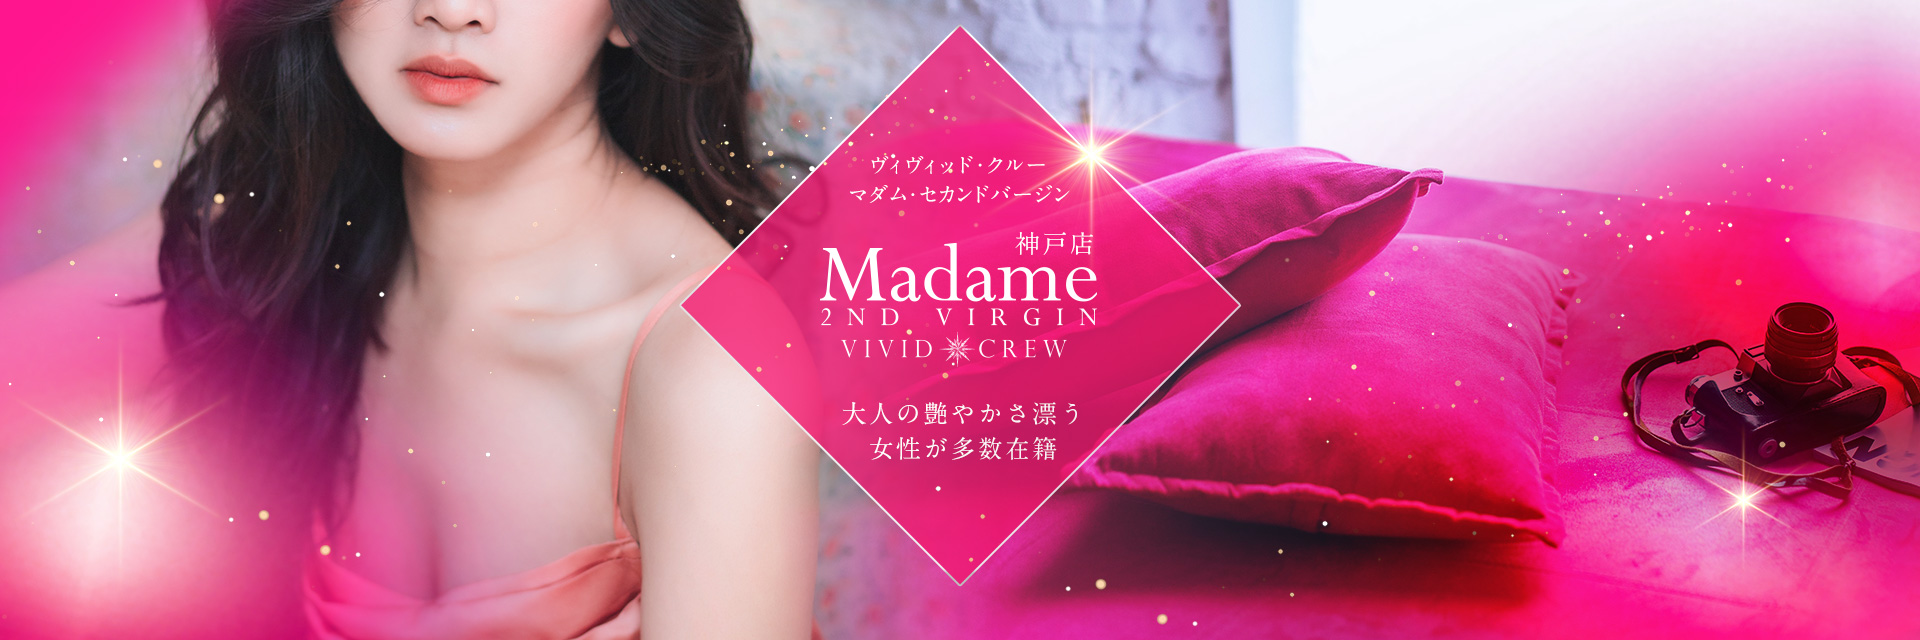 Madame 2nd virgin 神戸店